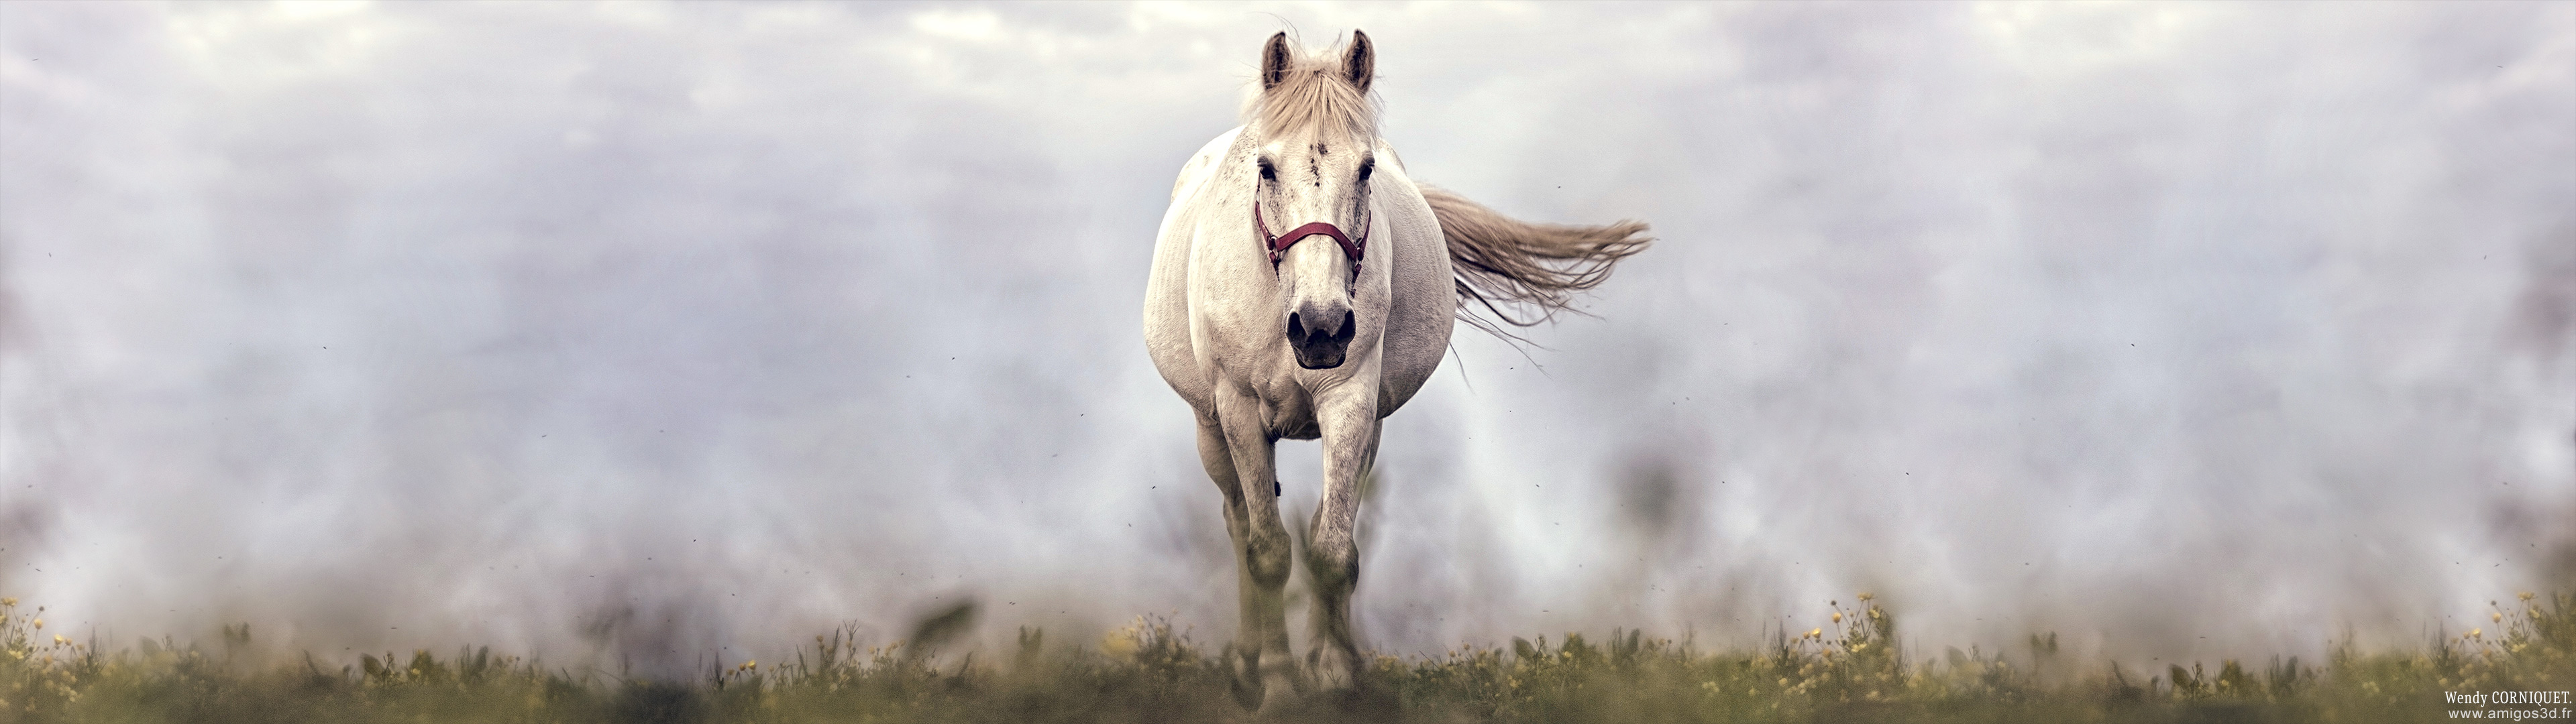 208-whitehorse